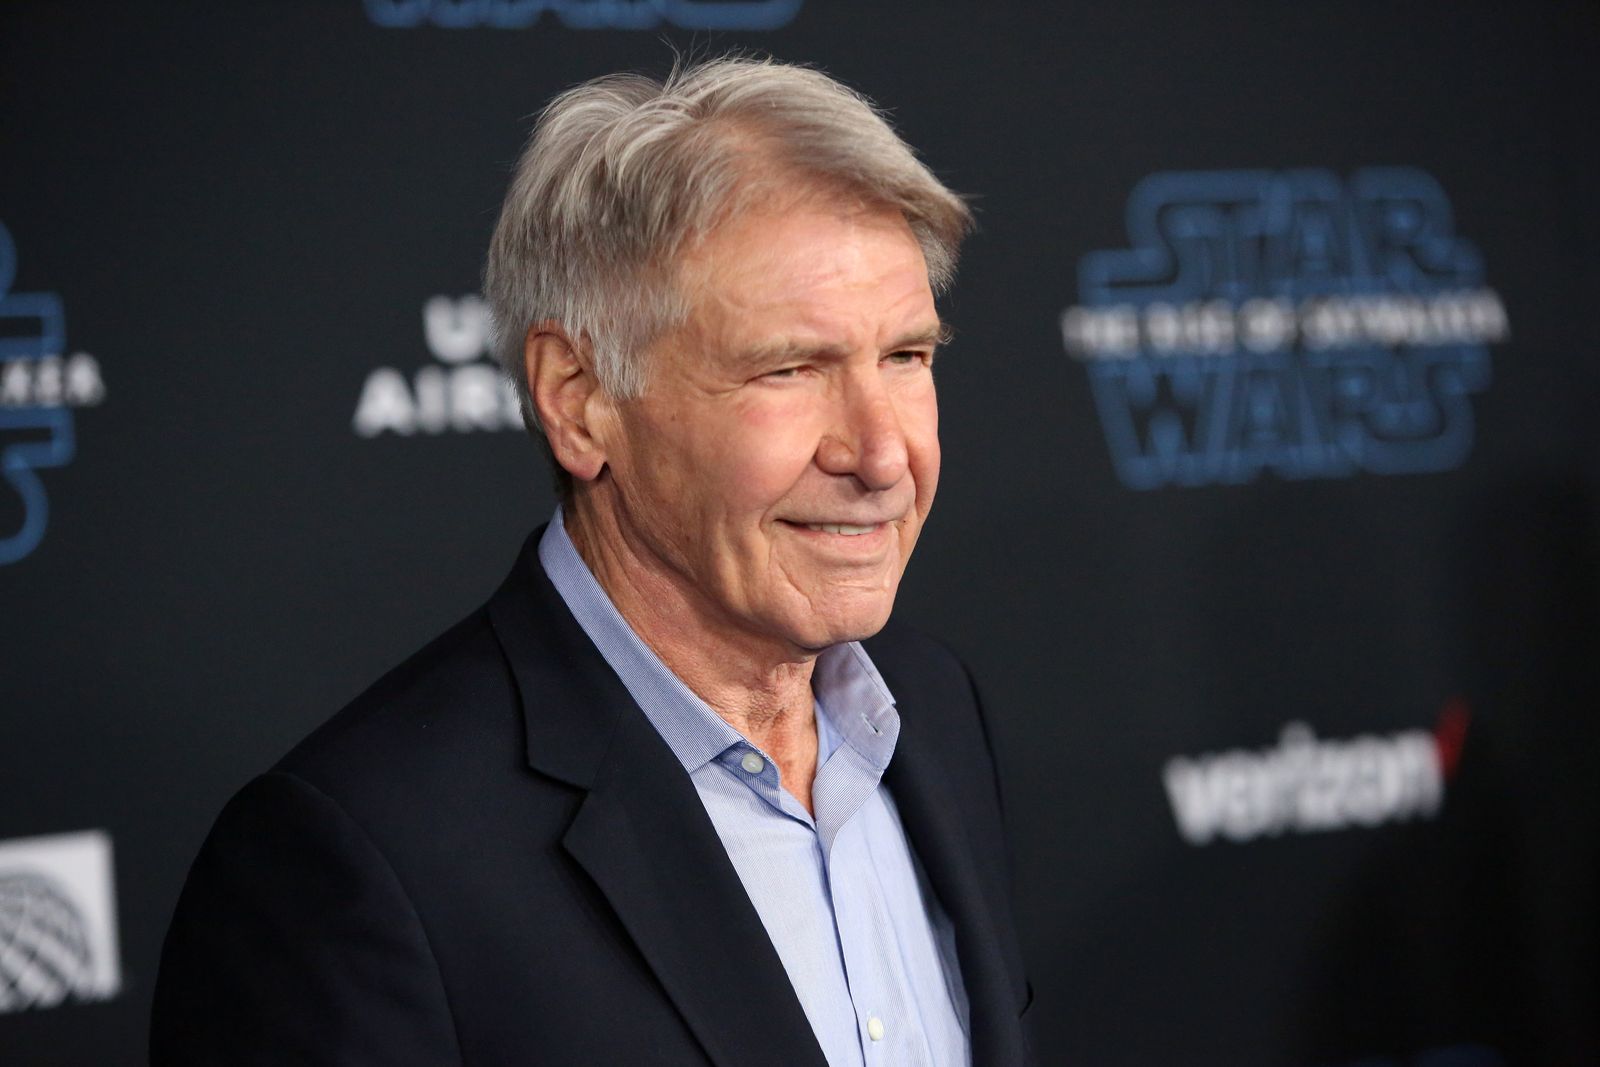 Harrison Ford à la première mondiale de "Star Wars : The Rise of Skywalker" le 16 décembre 2019 à Hollywood, Californie | Photo : Getty Images